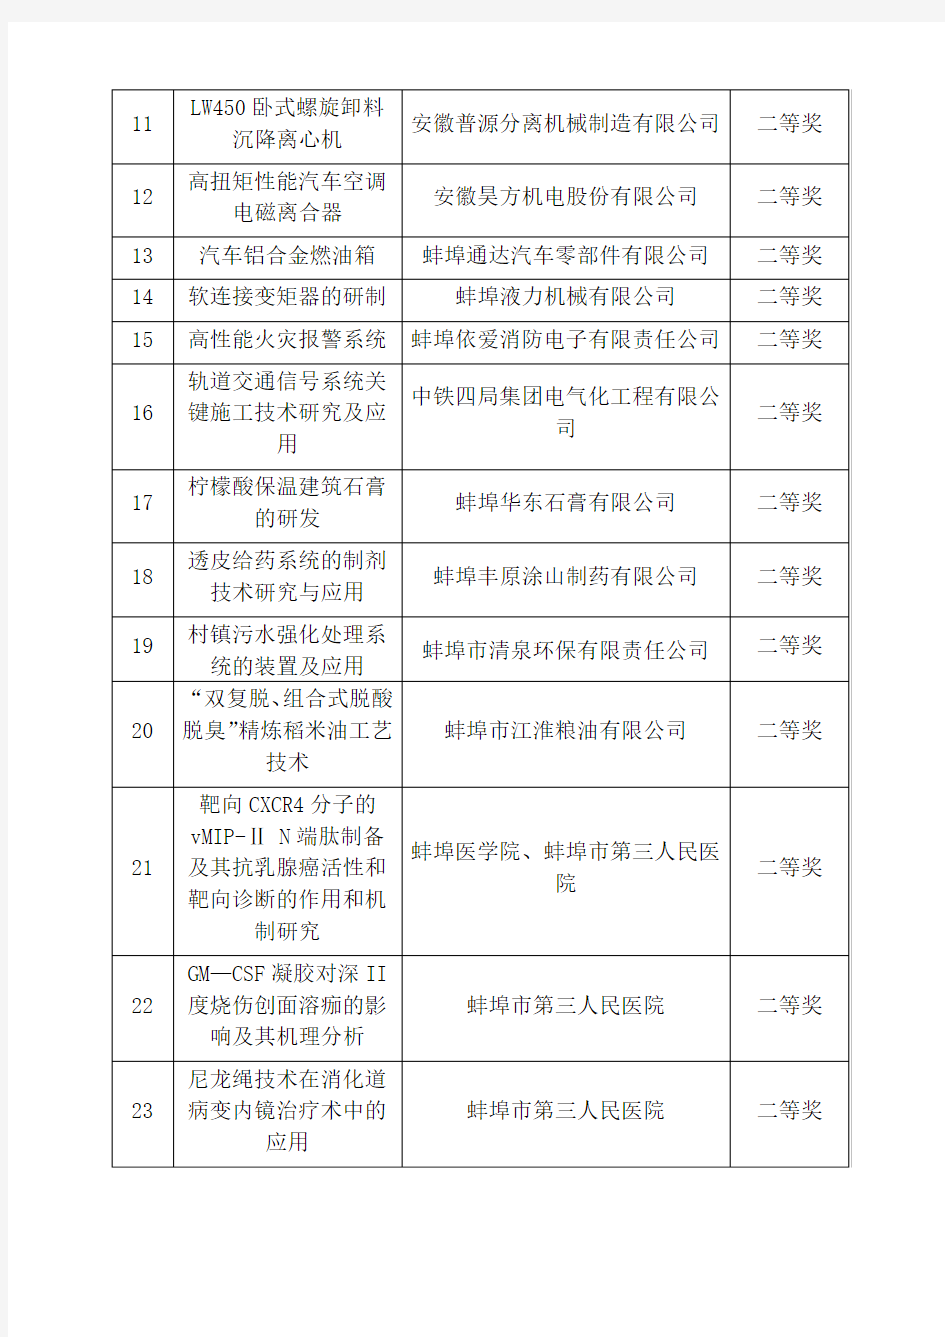 2014—2015年度蚌埠市科学技术奖专业组评审结果项目名单